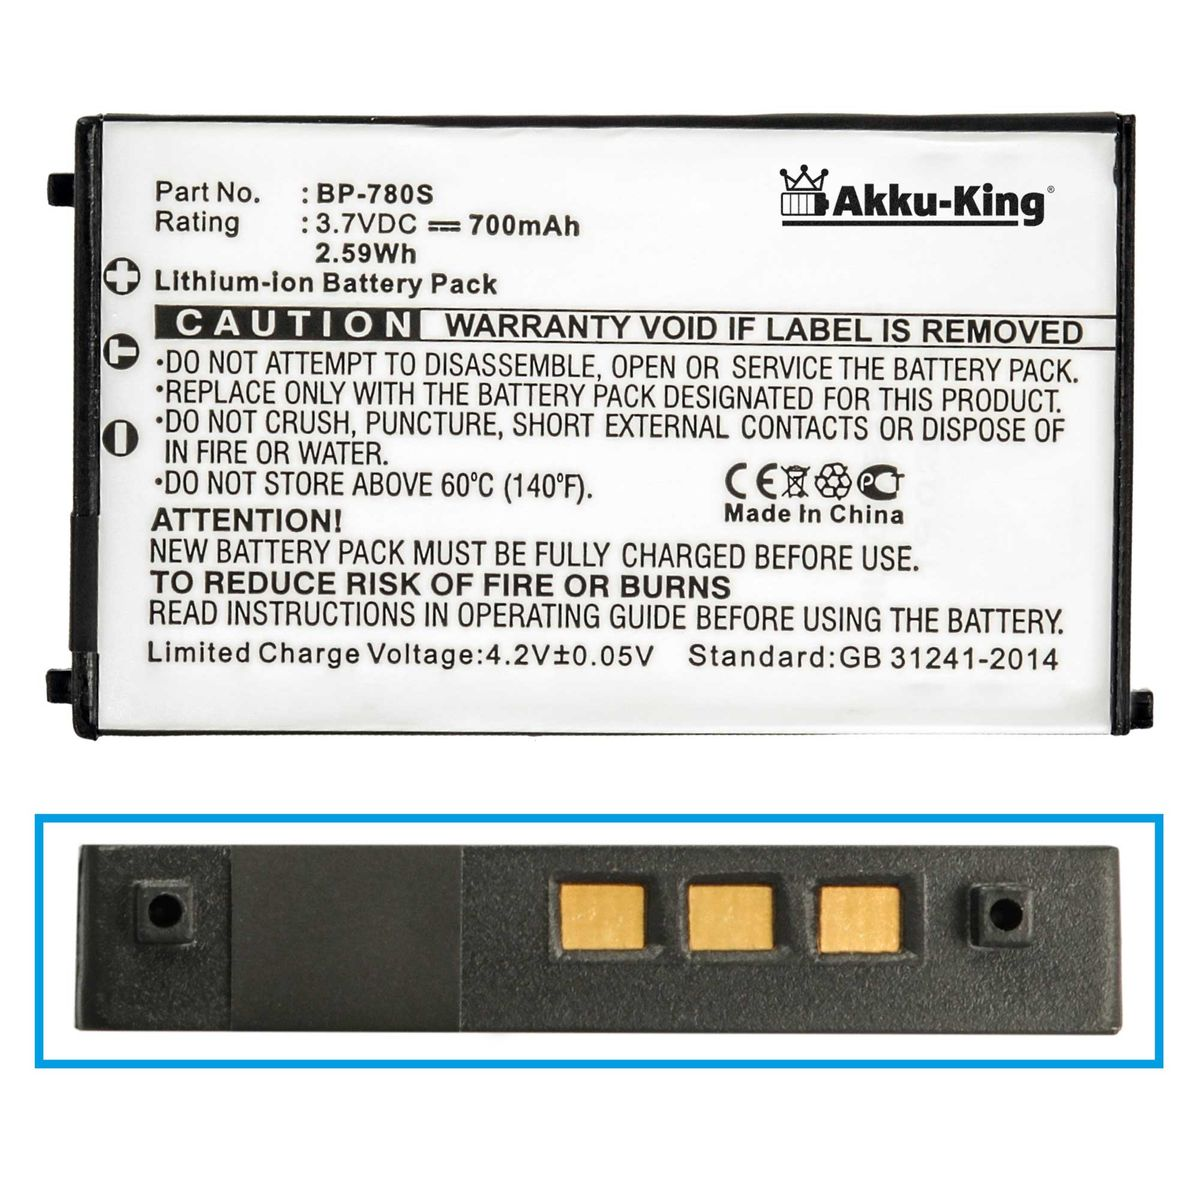 AKKU-KING Akku kompatibel mit Kyocera Li-Ion Kamera-Akku, 3.7 Volt, 700mAh BP-780S